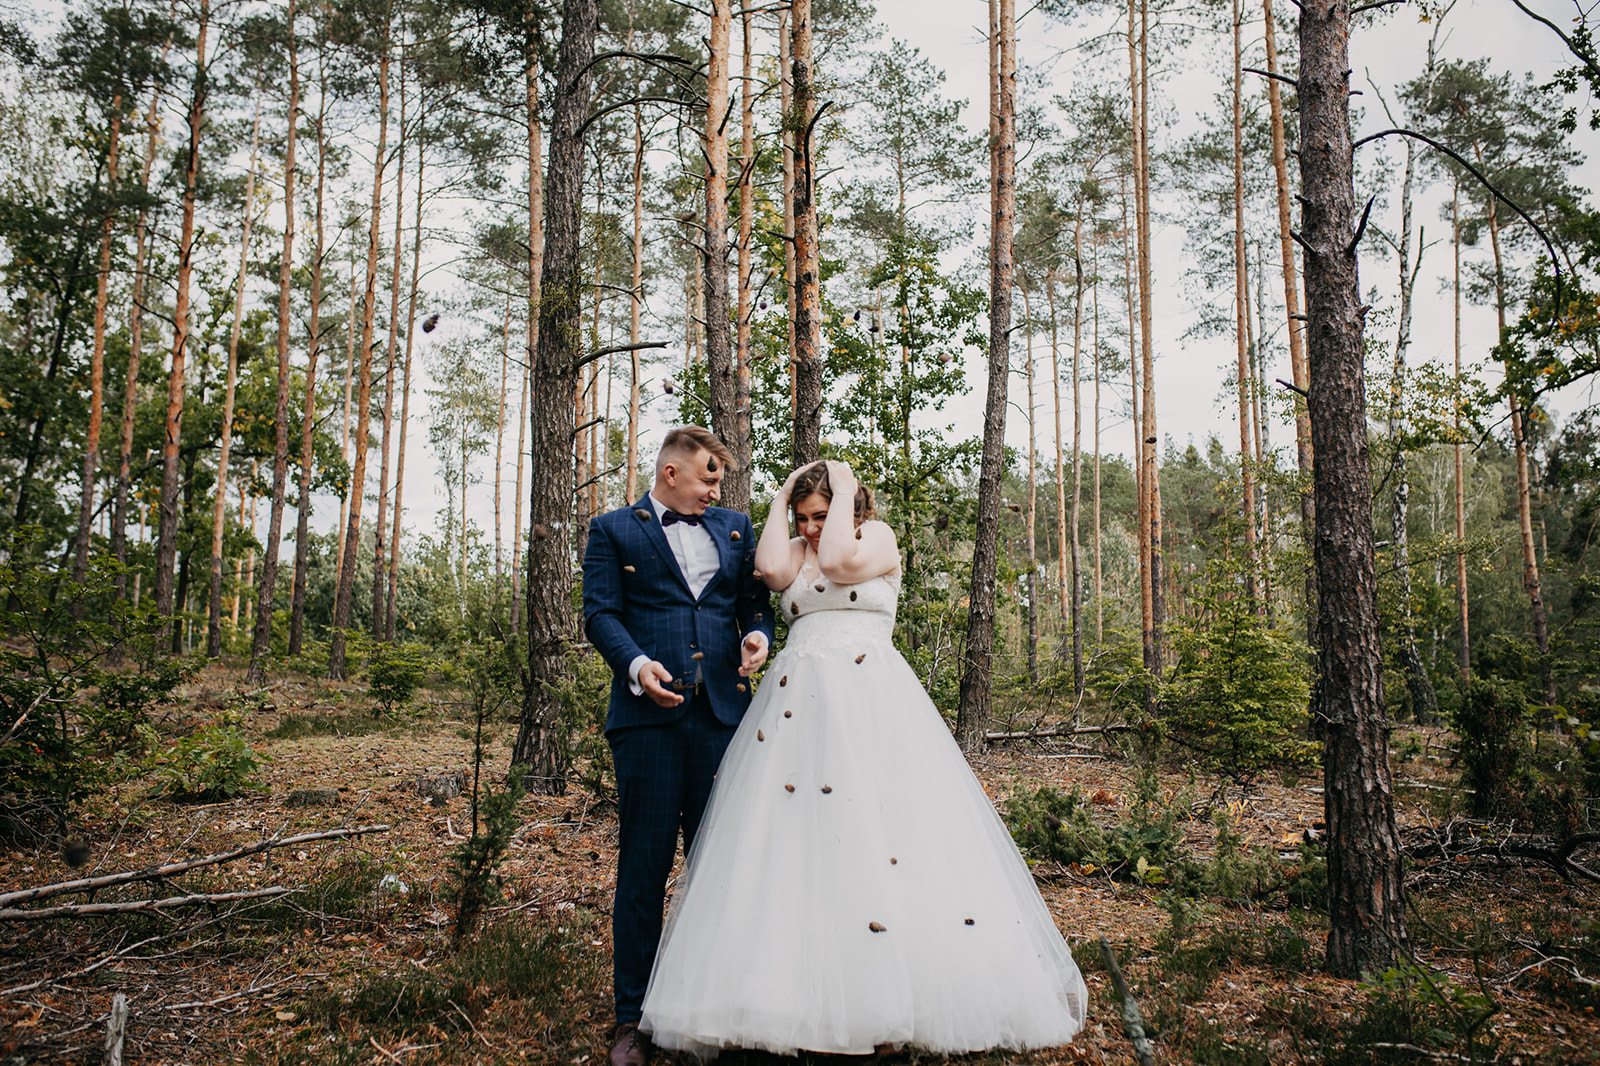 Jesienna sesja ślubna w szklarni i w lesie